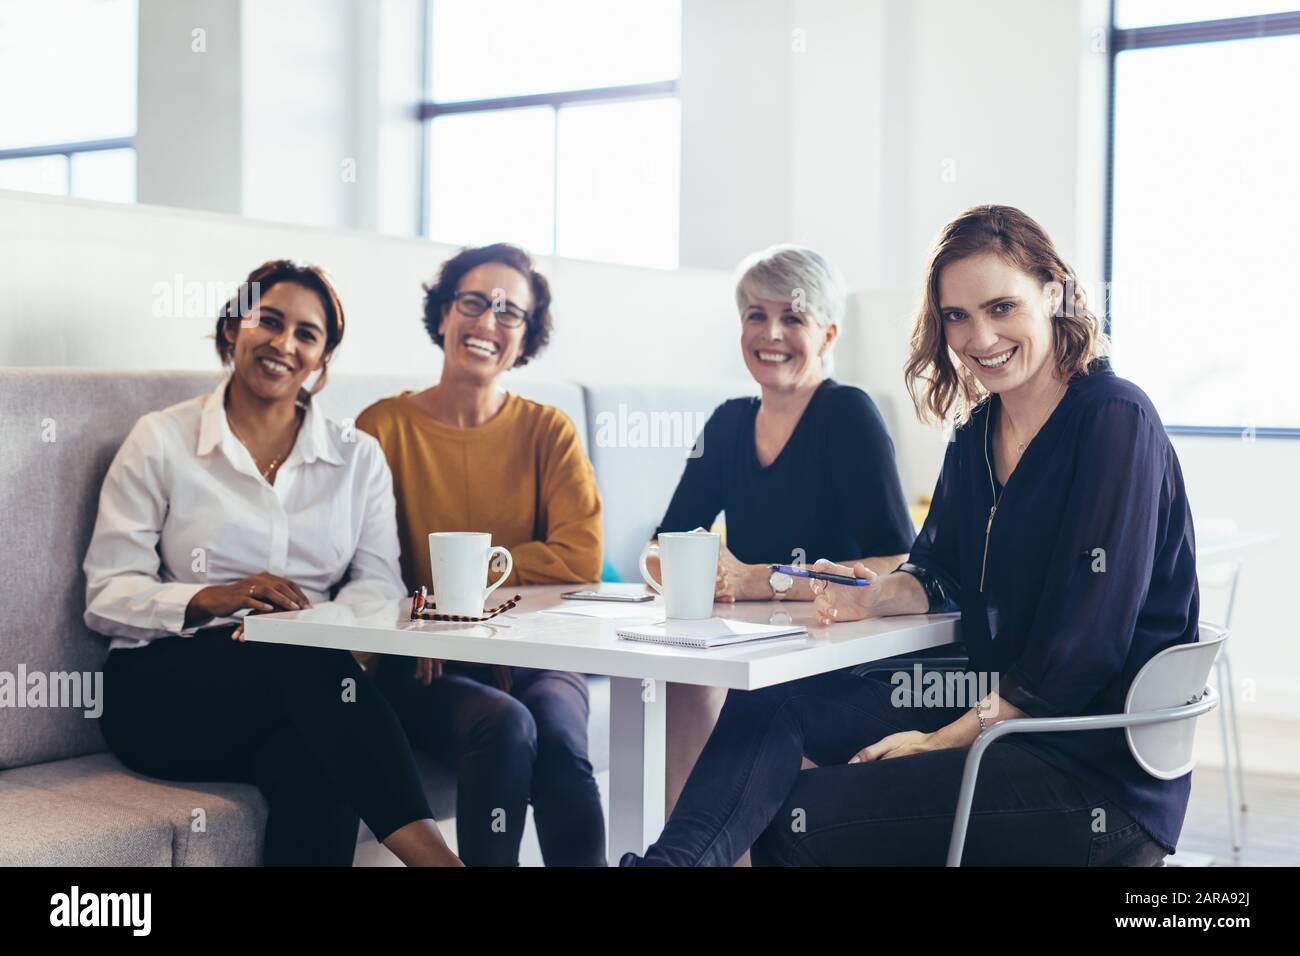 Quatre femmes d'affaires assis à la table et regardant l'appareil photo. Équipe de professionnels de l'entreprise féminine. Banque D'Images